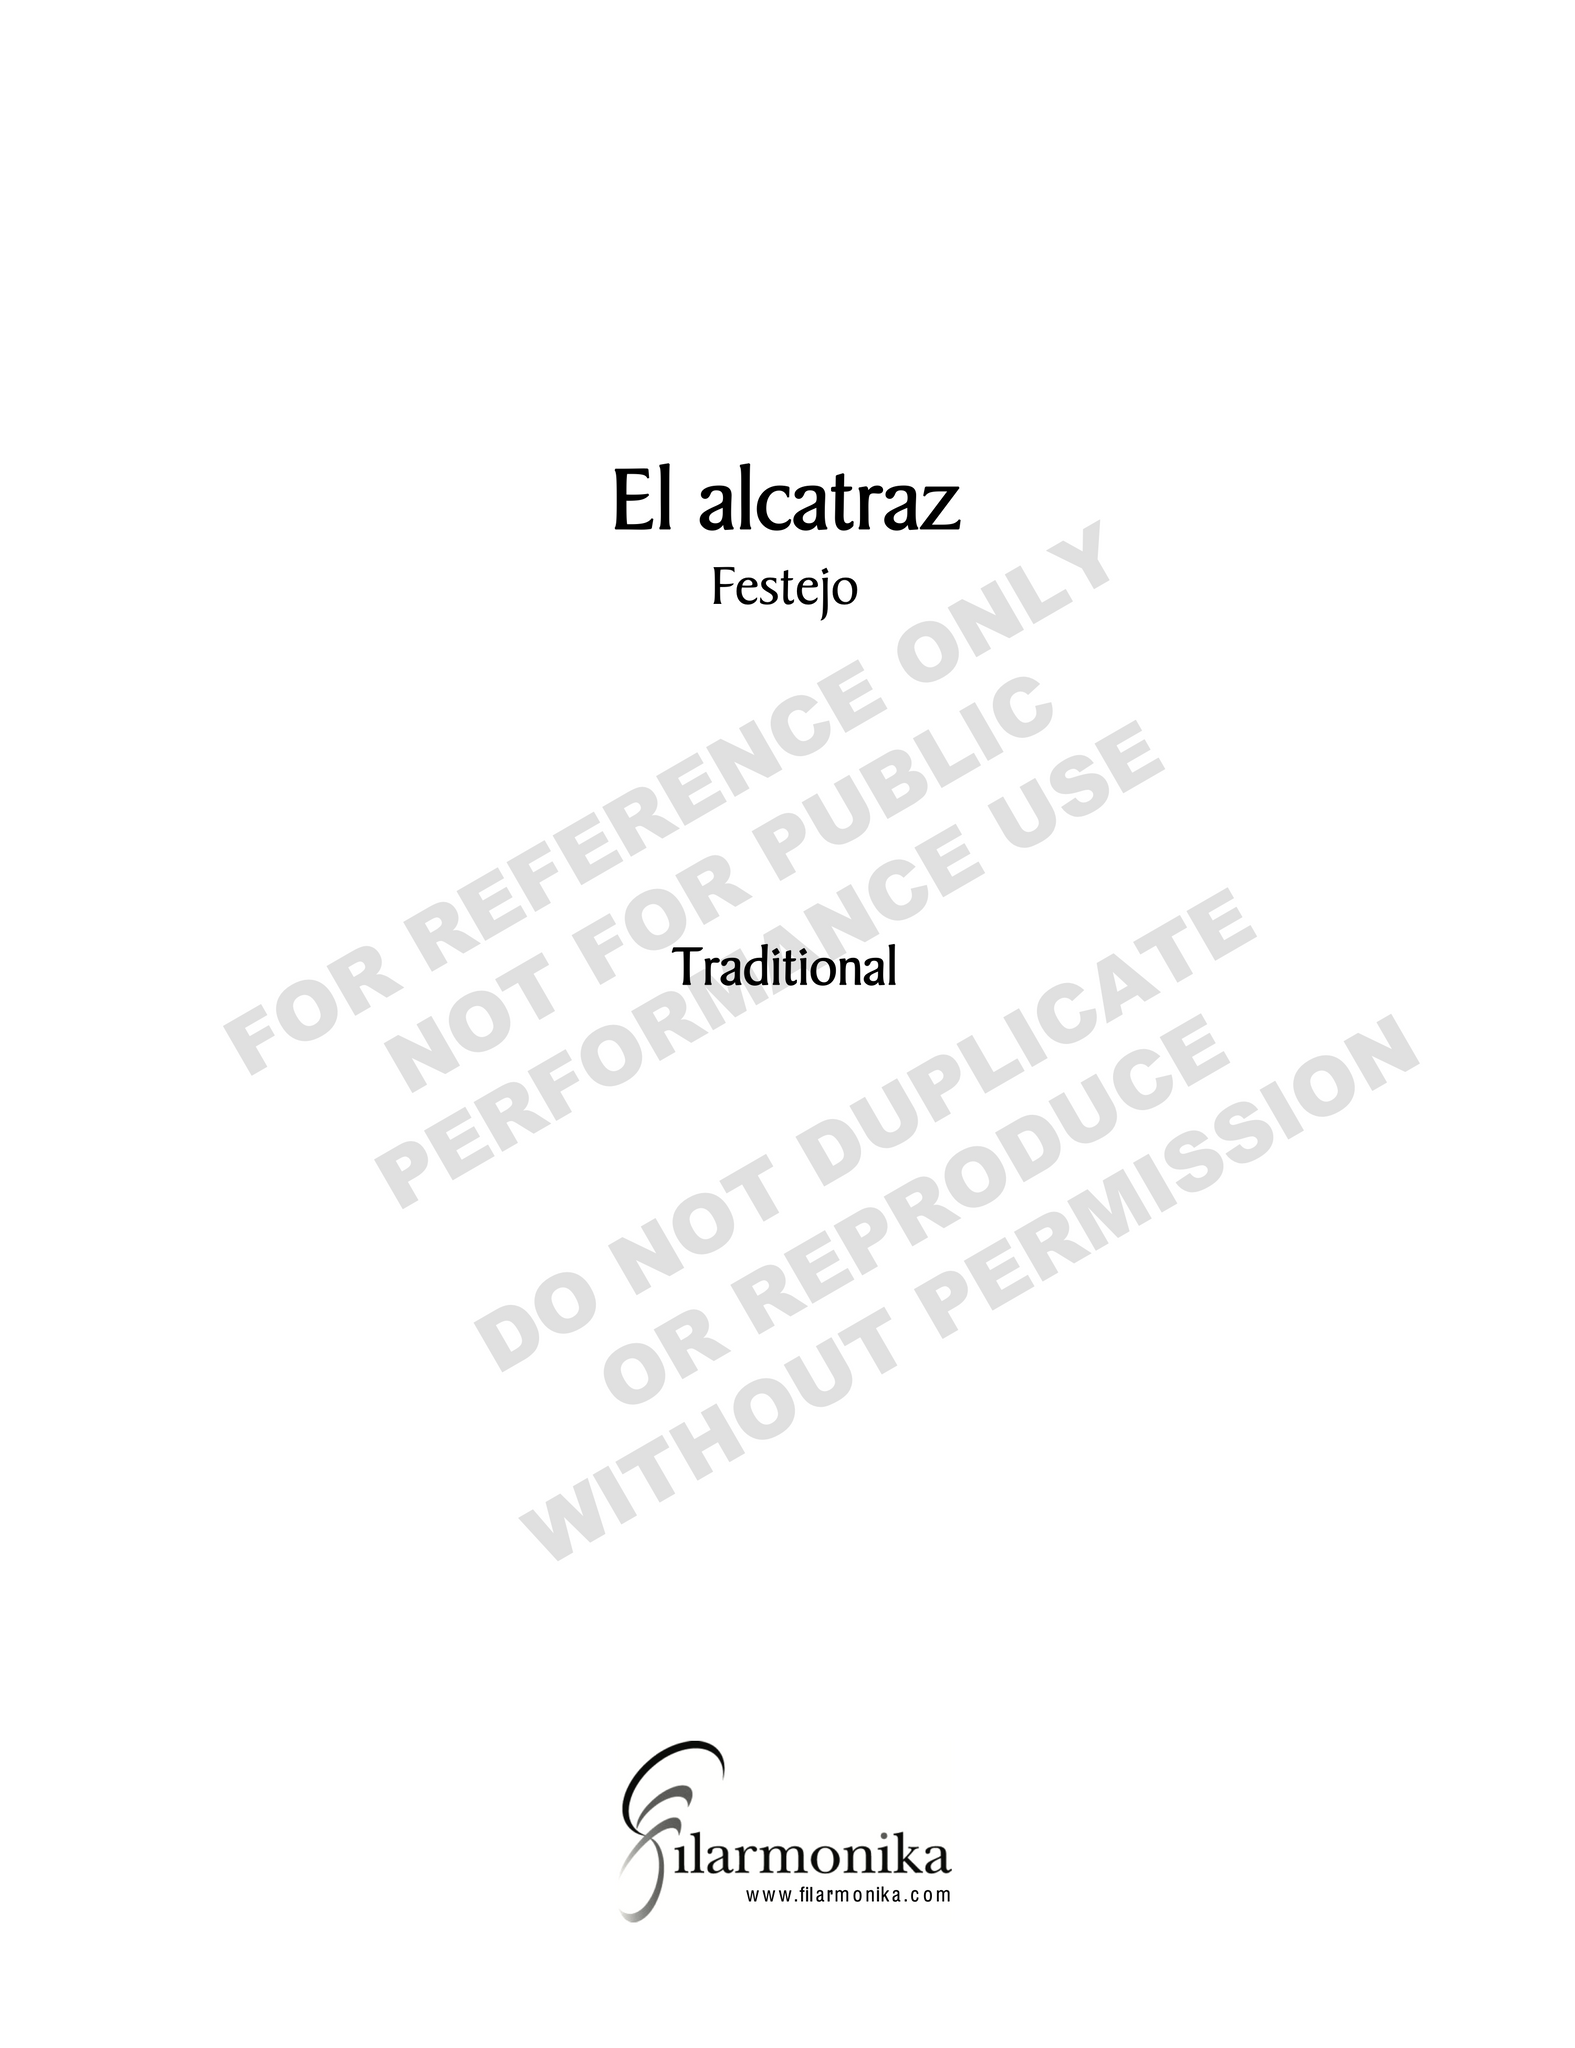 El alcatraz (arr. Álvarez)